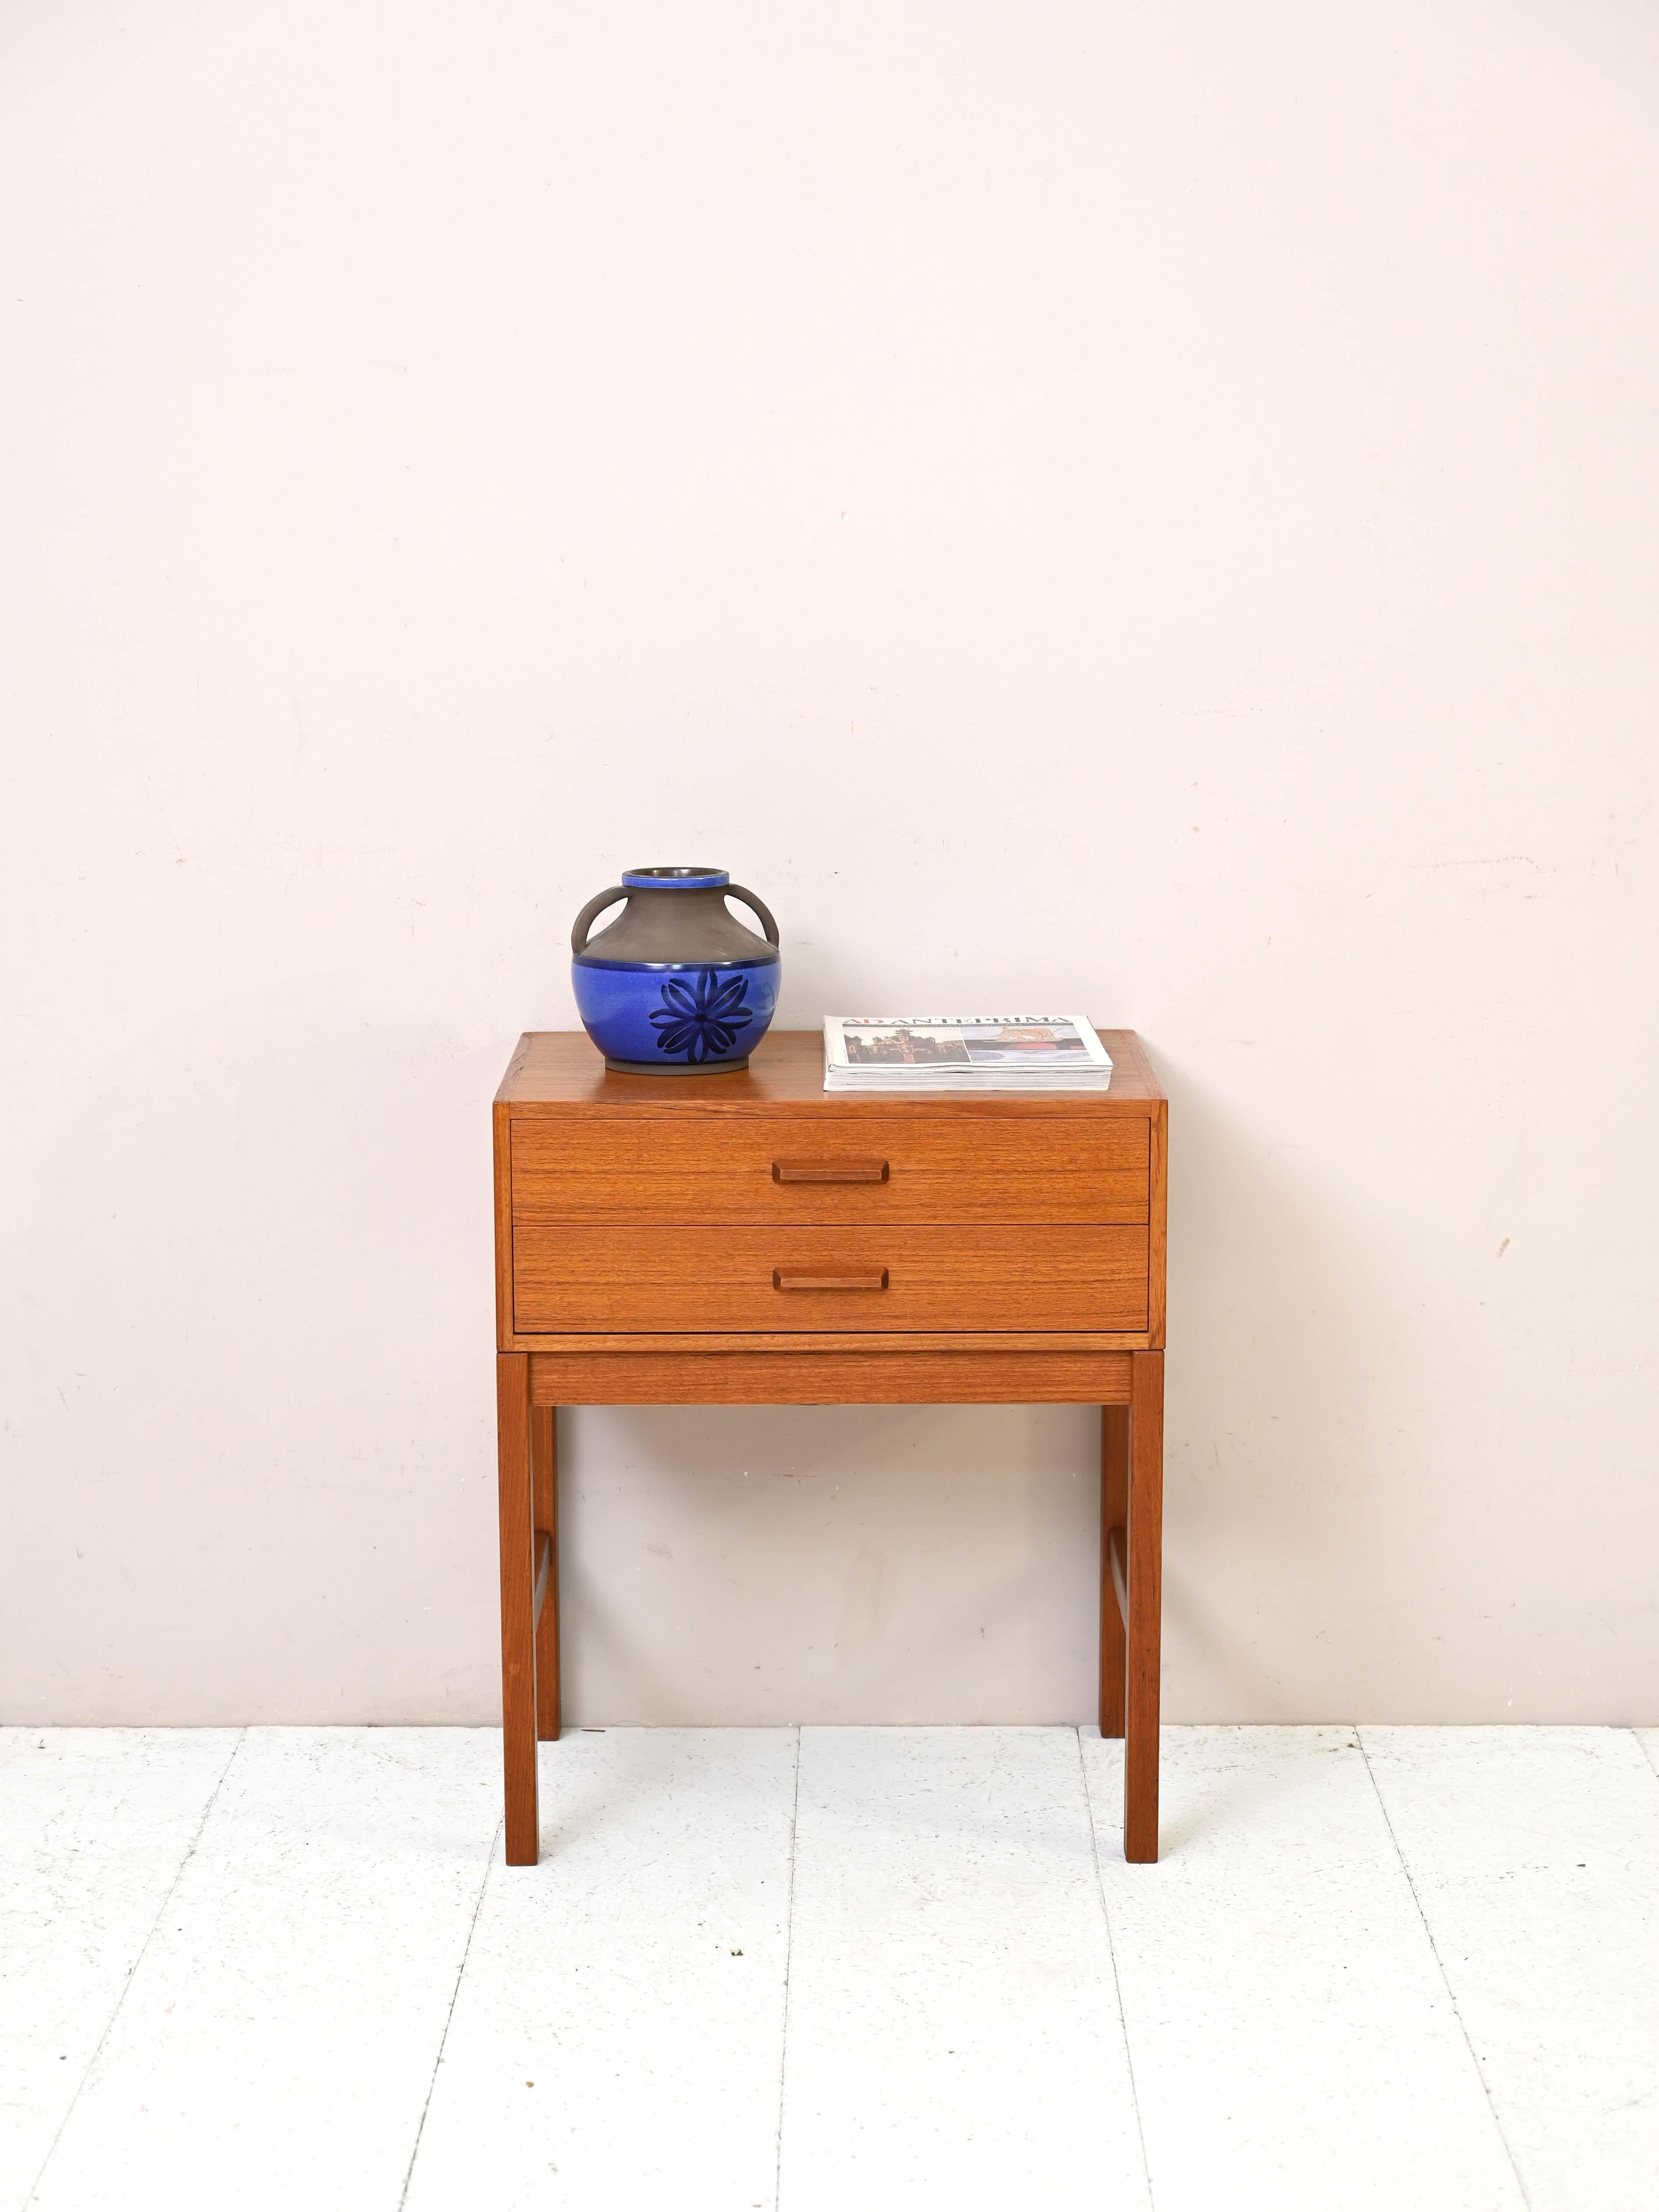 Table de chevet en teck des années 1960.

Ce meuble vintage présente des formes simples et carrées et un cadre entièrement en teck. La poignée des deux tiroirs est également en bois sculpté.
Idéal comme table de nuit mais aussi comme meuble